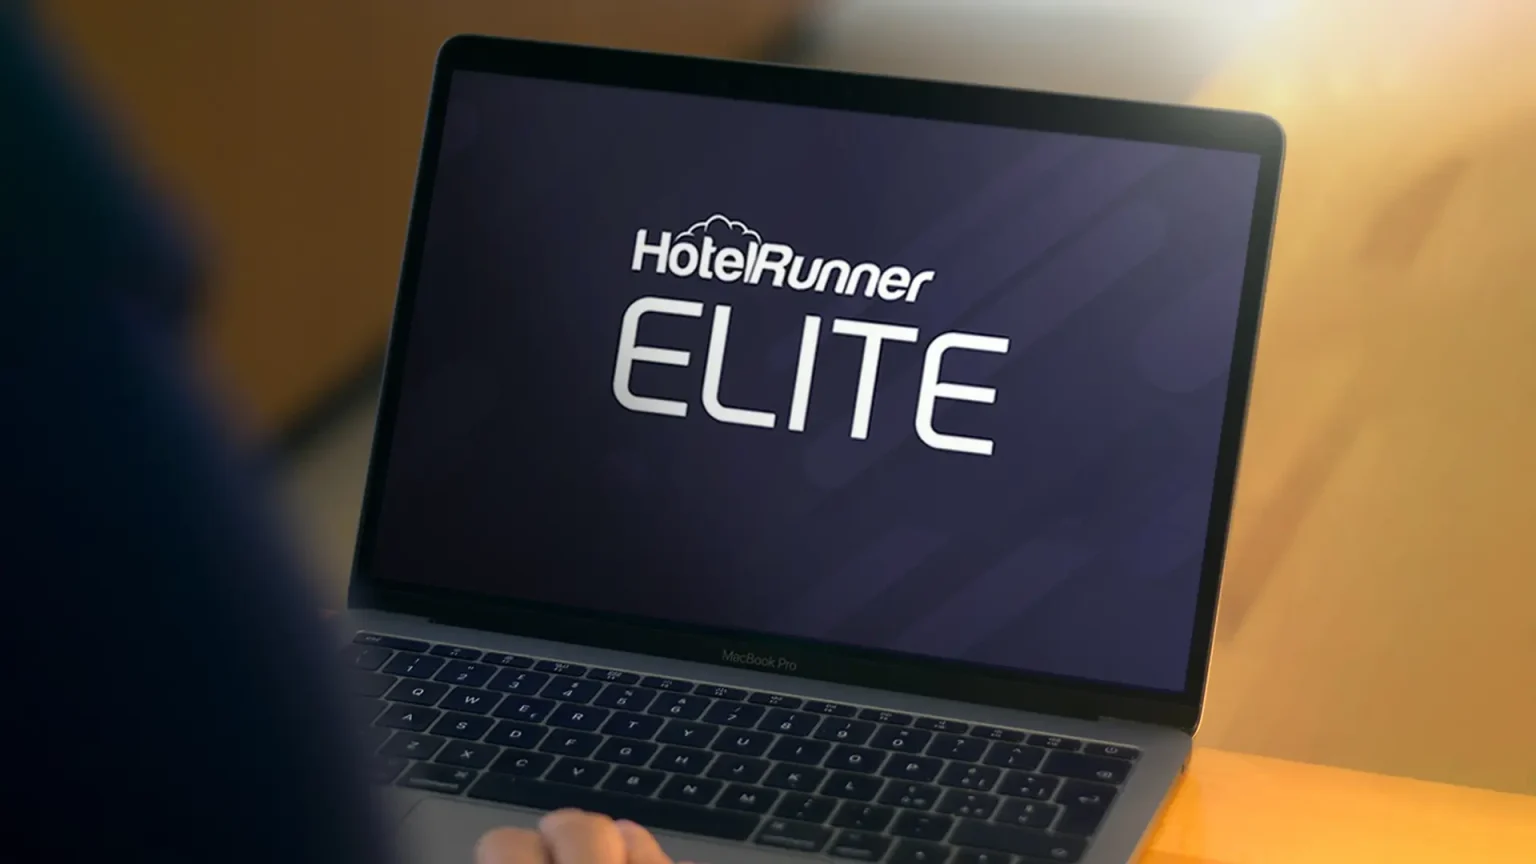 HotelRunner Elite